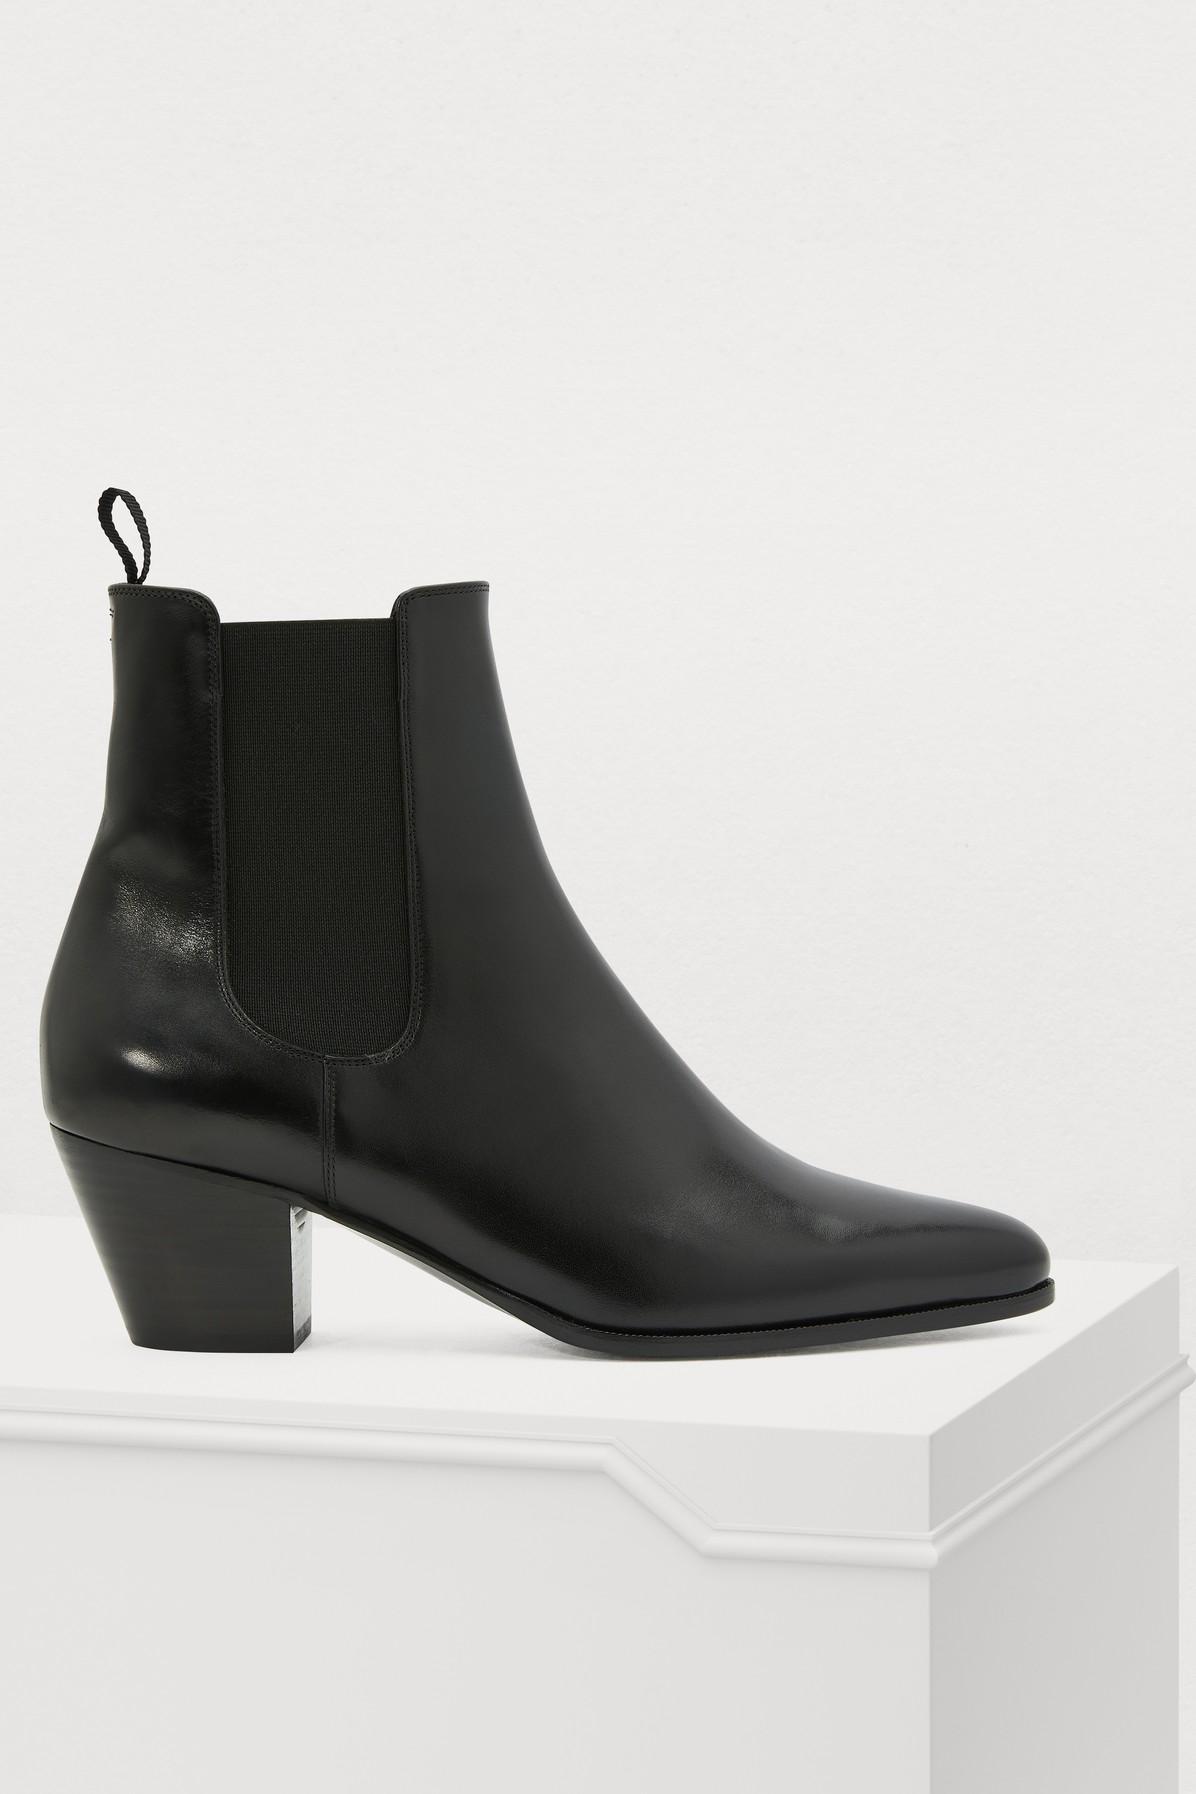 Céline Leather Saint-germain Des Près Chelsea Boots in Black - Lyst